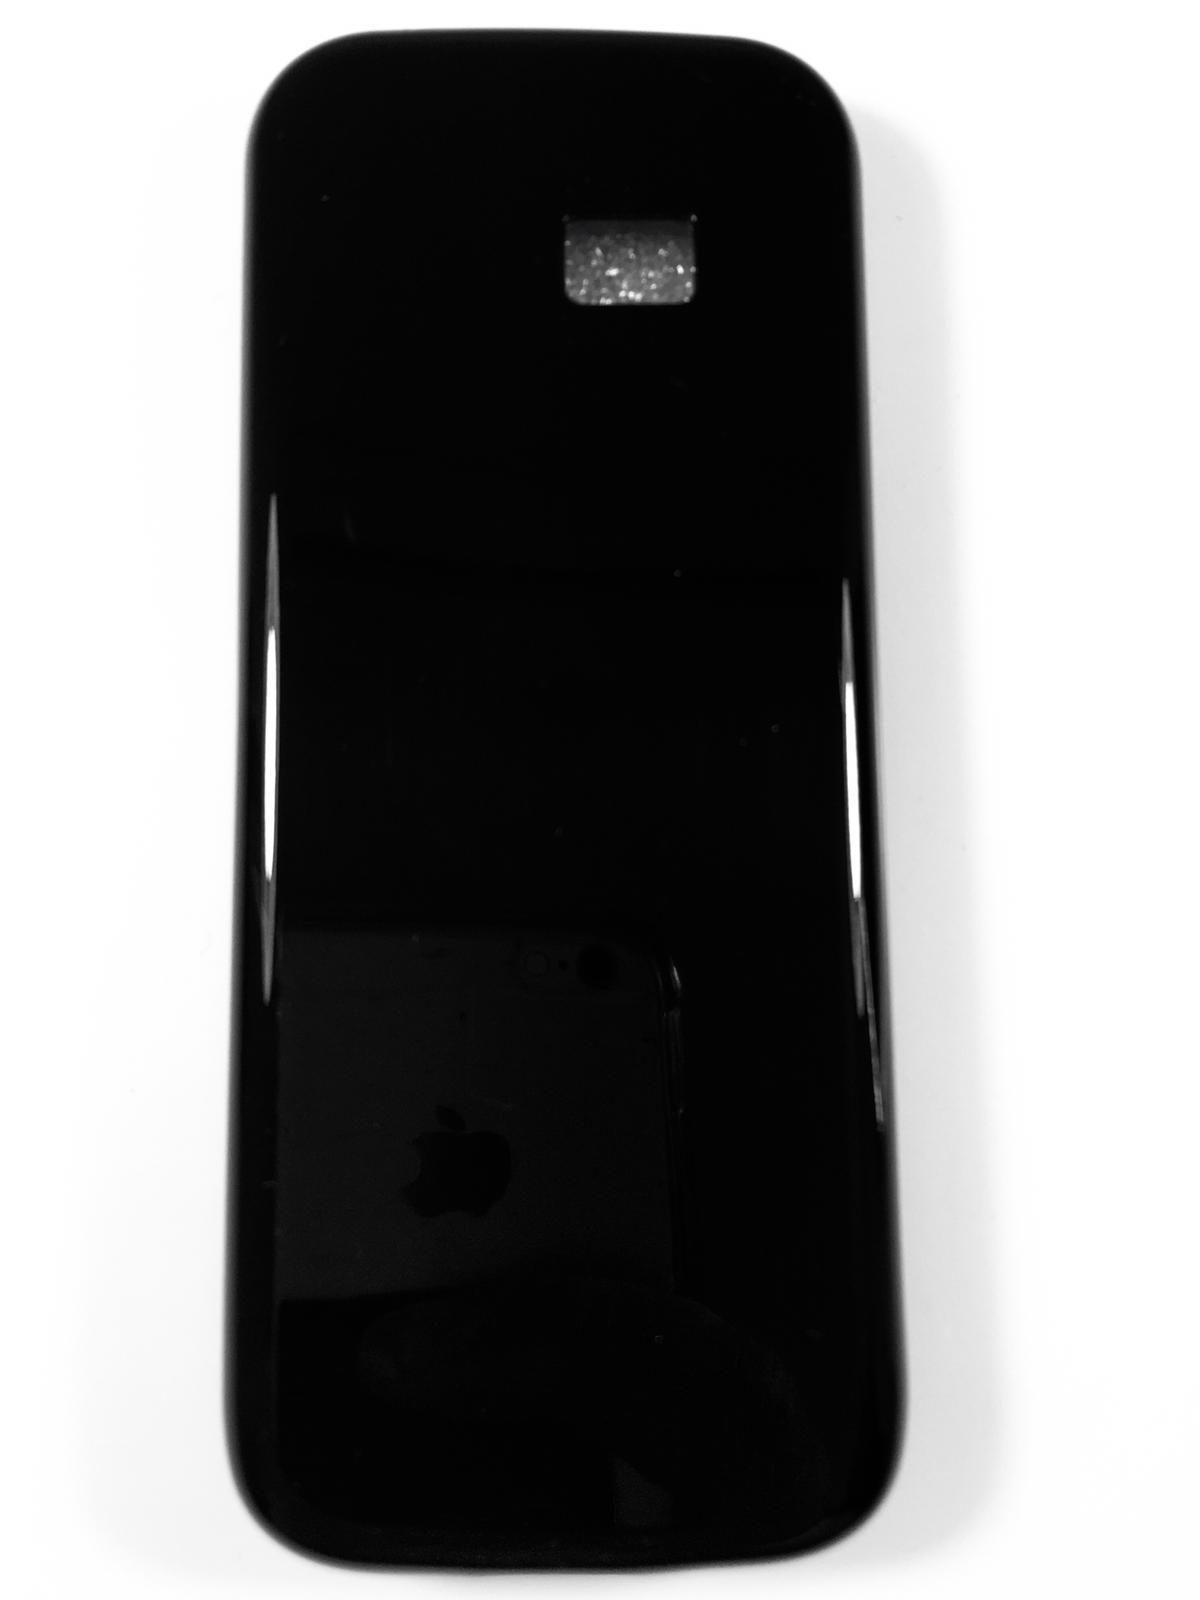 מגן סיליקון לFirst Phone G10 בצבע שחור